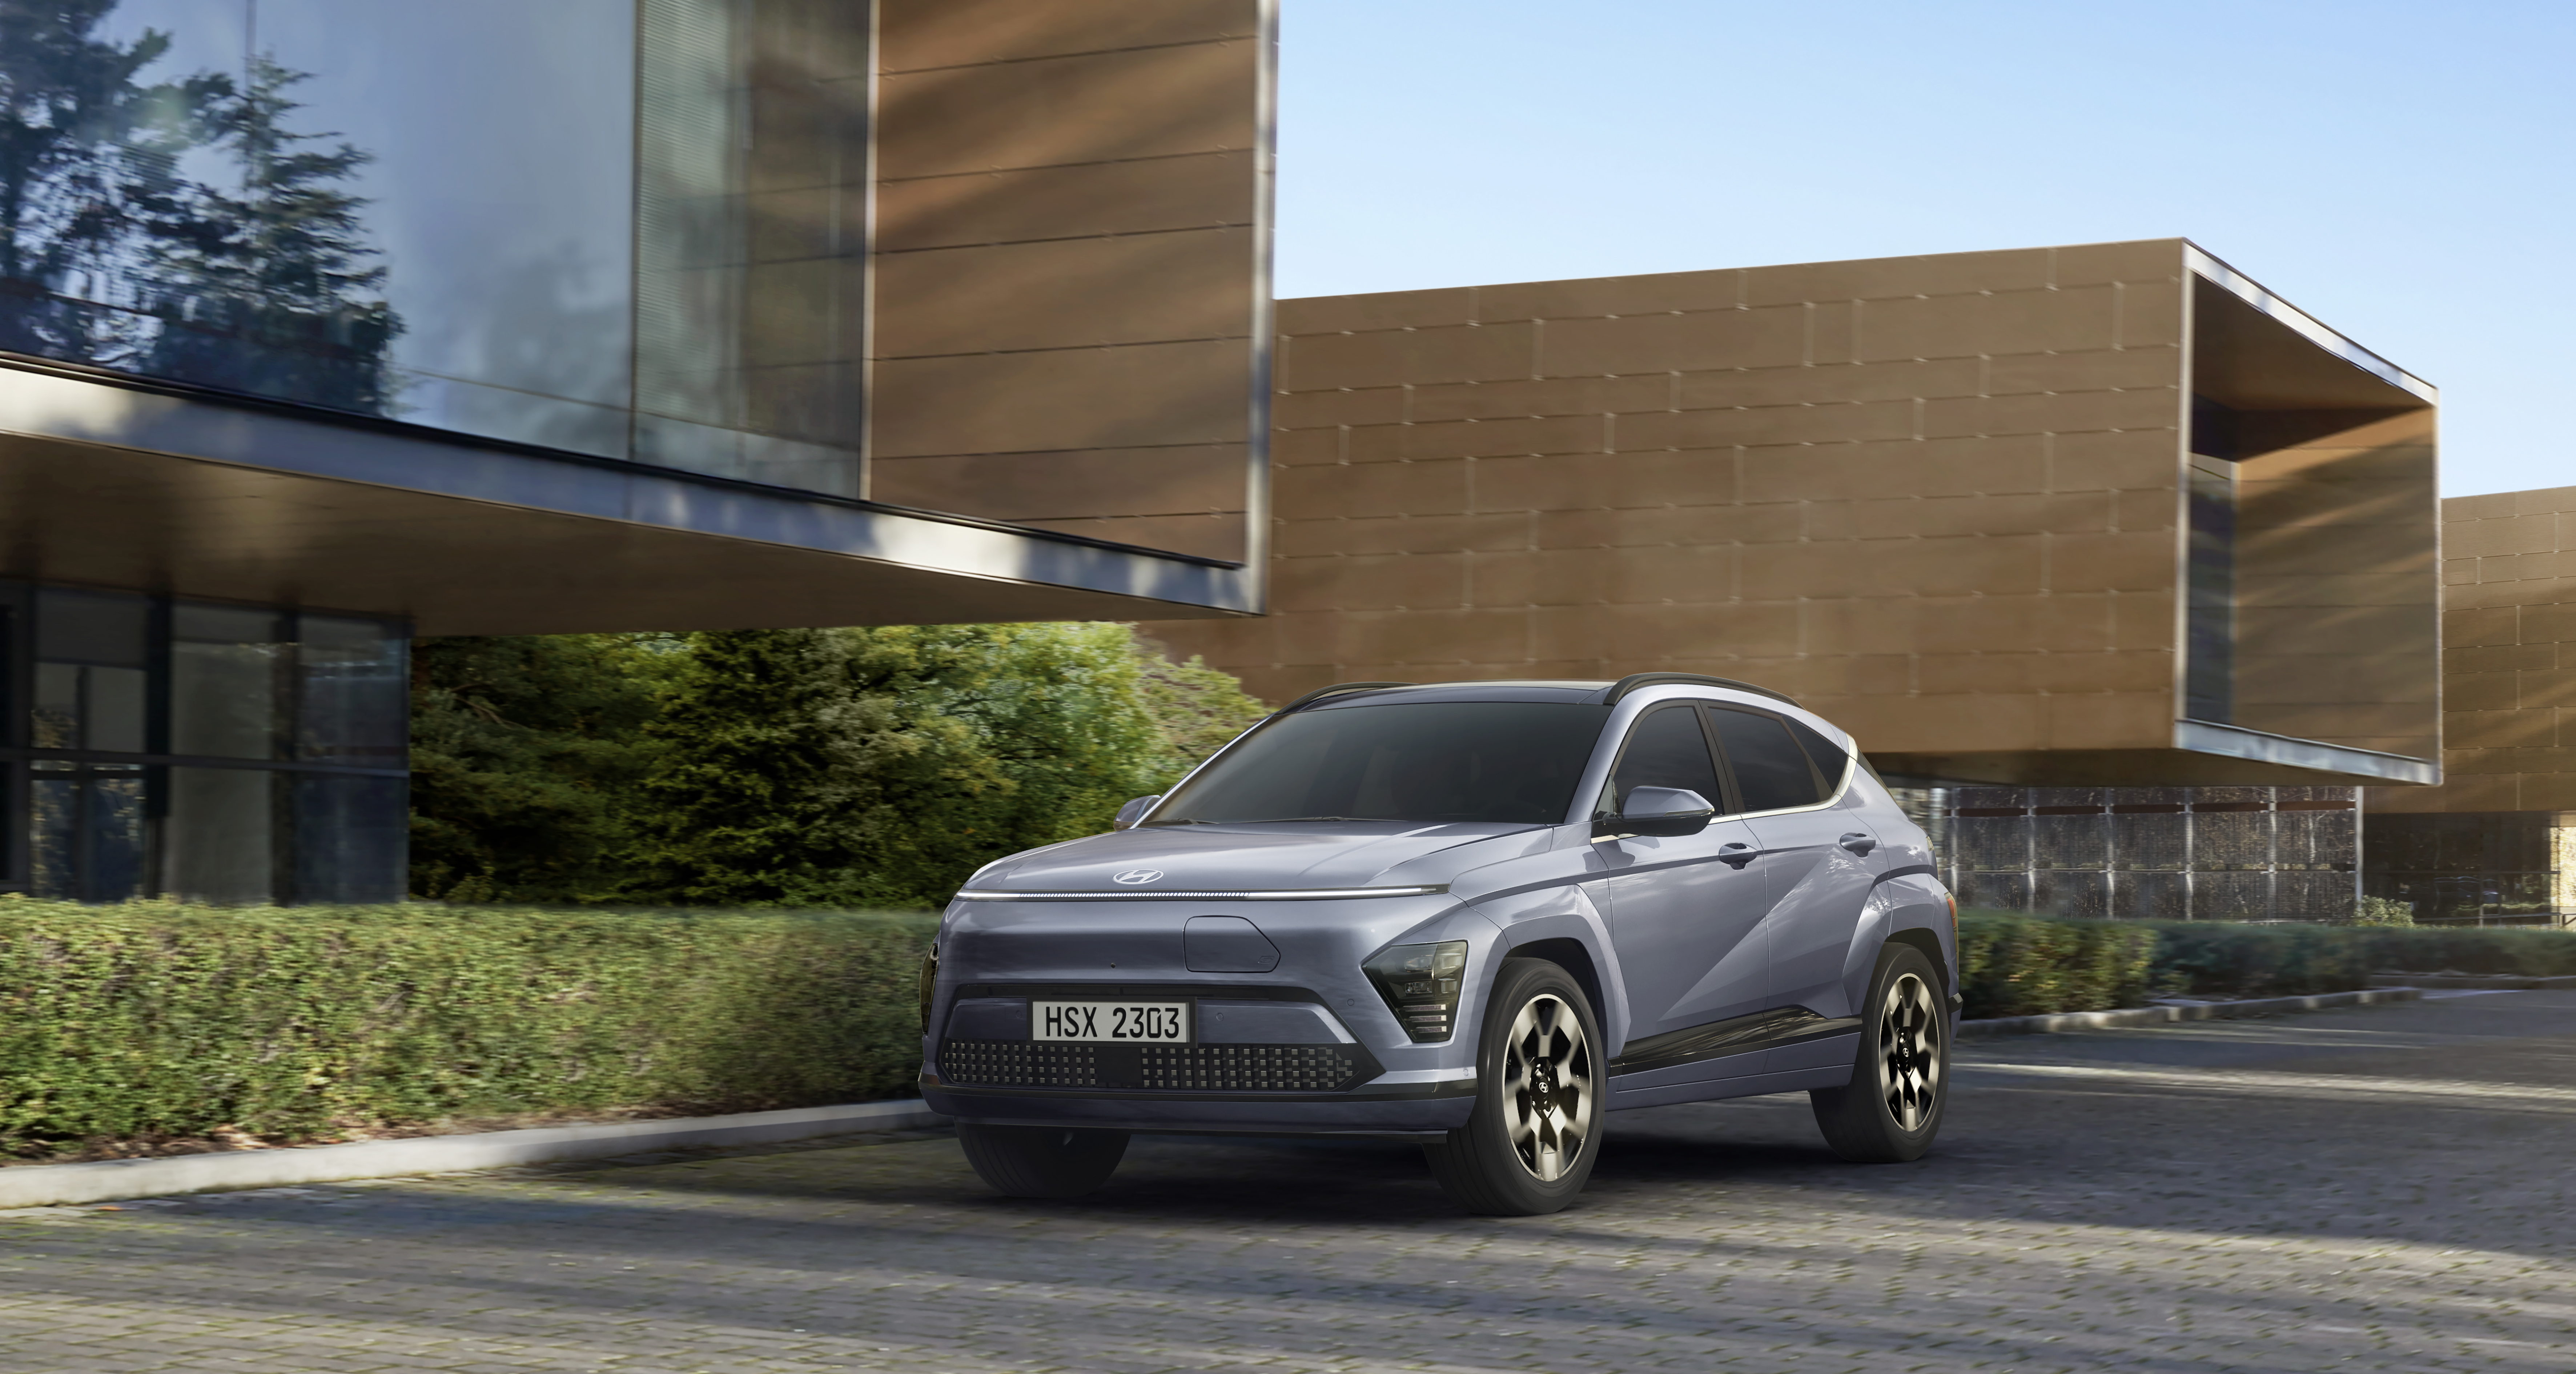 Úplne nový a vylepšený všestranný model KONA urýchľuje víziu elektrifikácie značky Hyundai s dlhším dojazdom a pokročilými funkciami